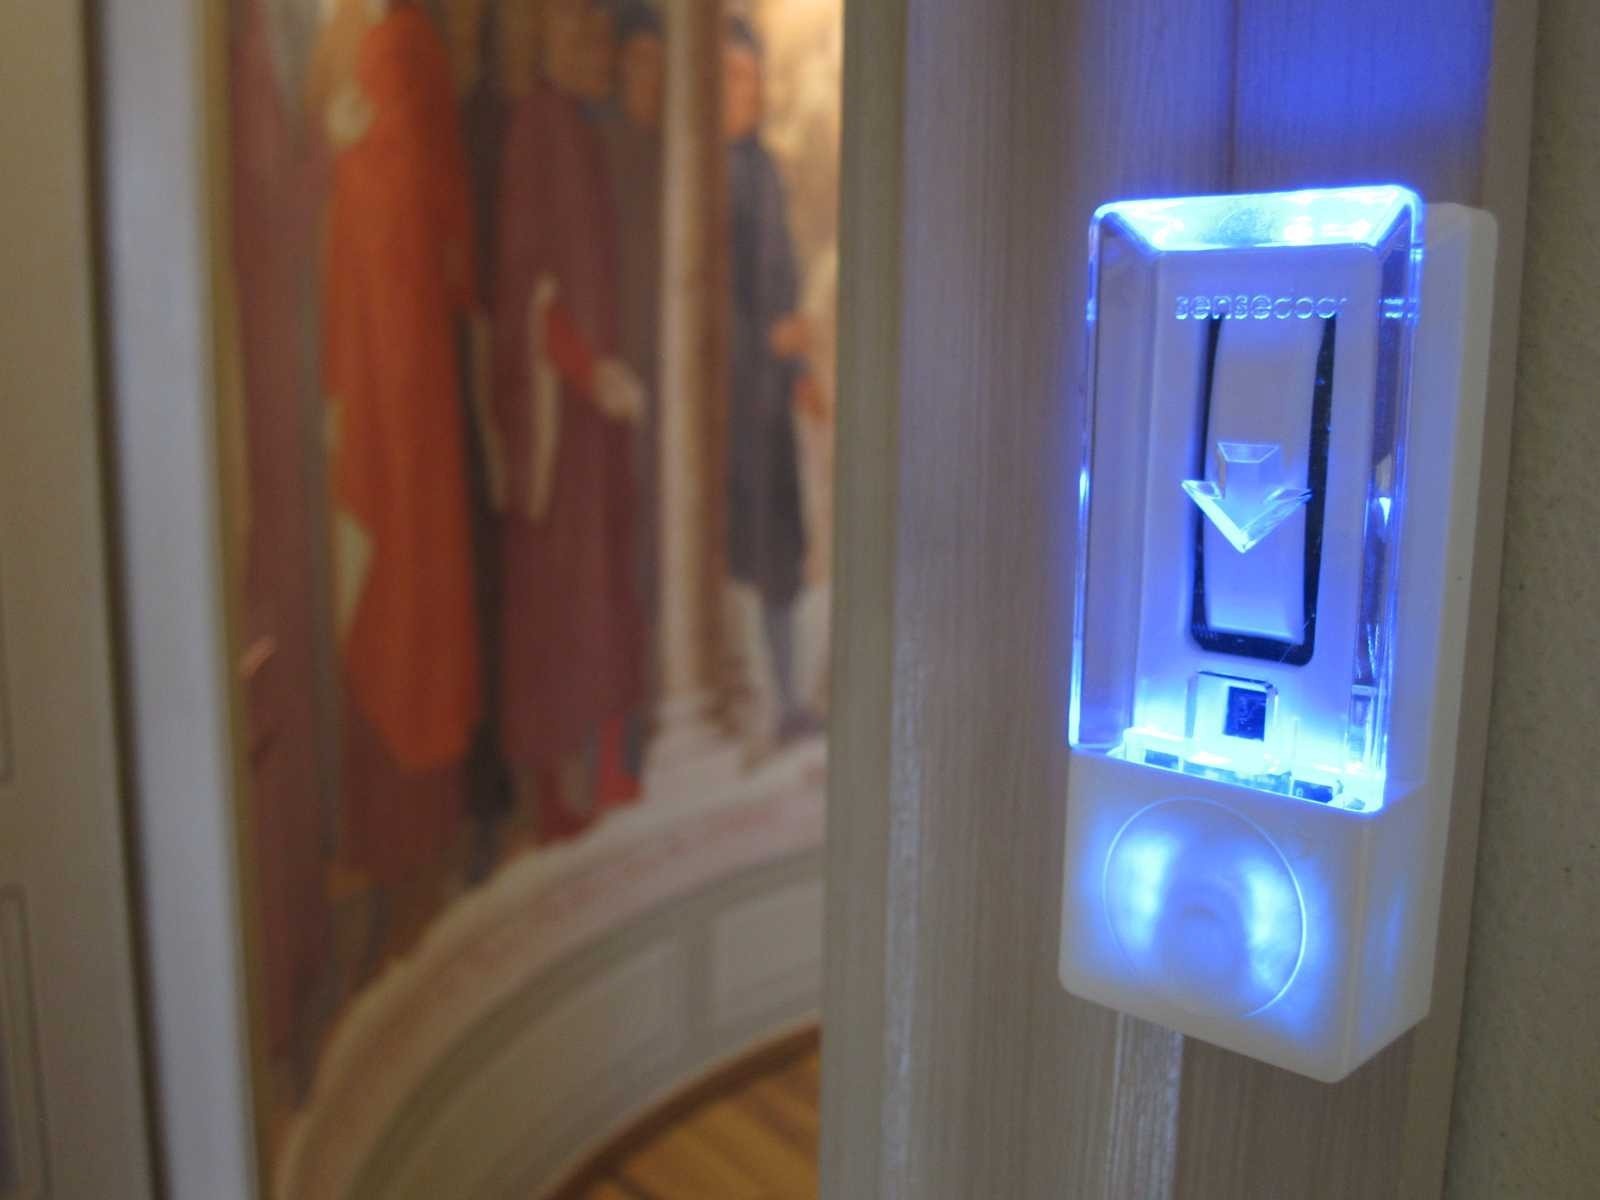 La luce lampeggiante del lettore interno invita il cliente ad inserire la scheda, la quale abiliterà le utenze di camera e la